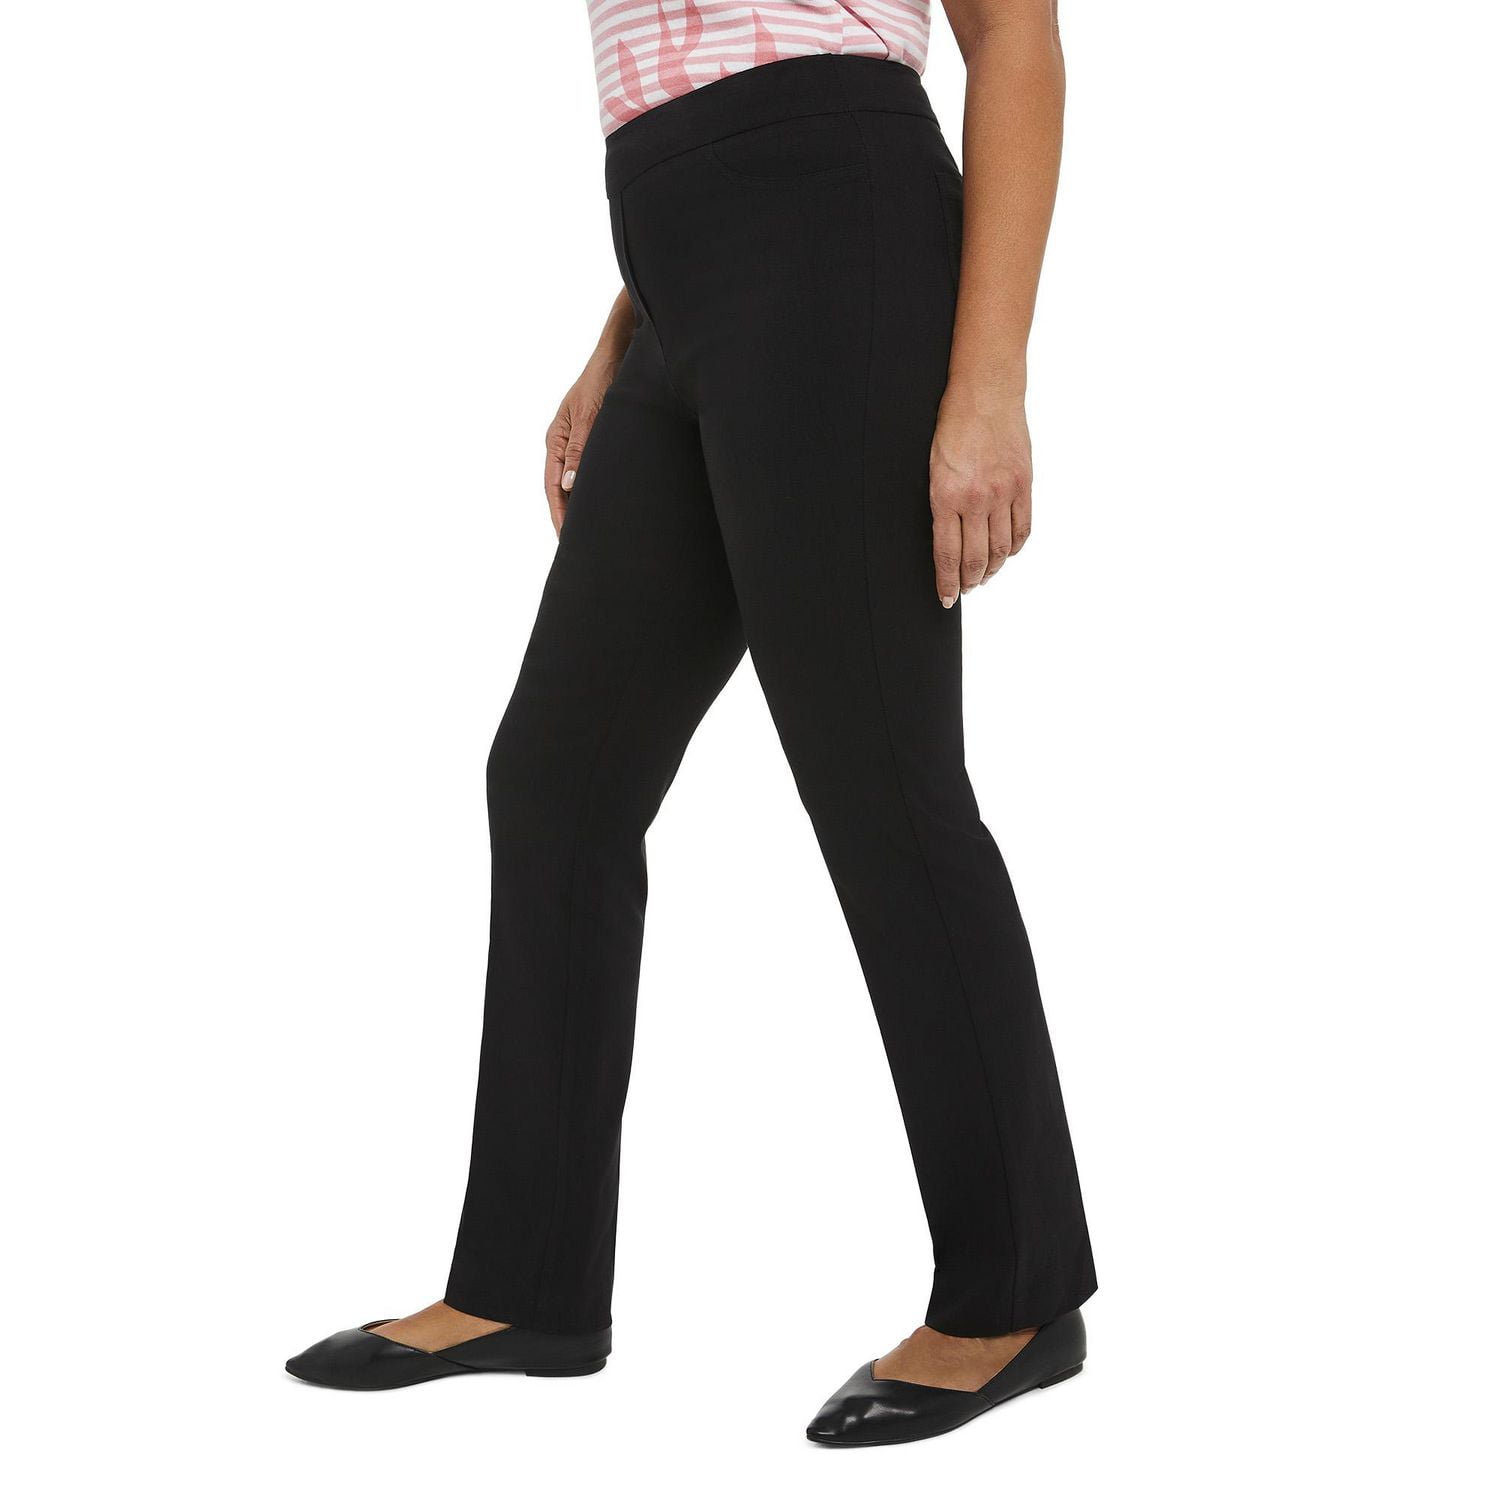 Penmans Women's Pull-On Straight Leg Pant, Sizes 2-18